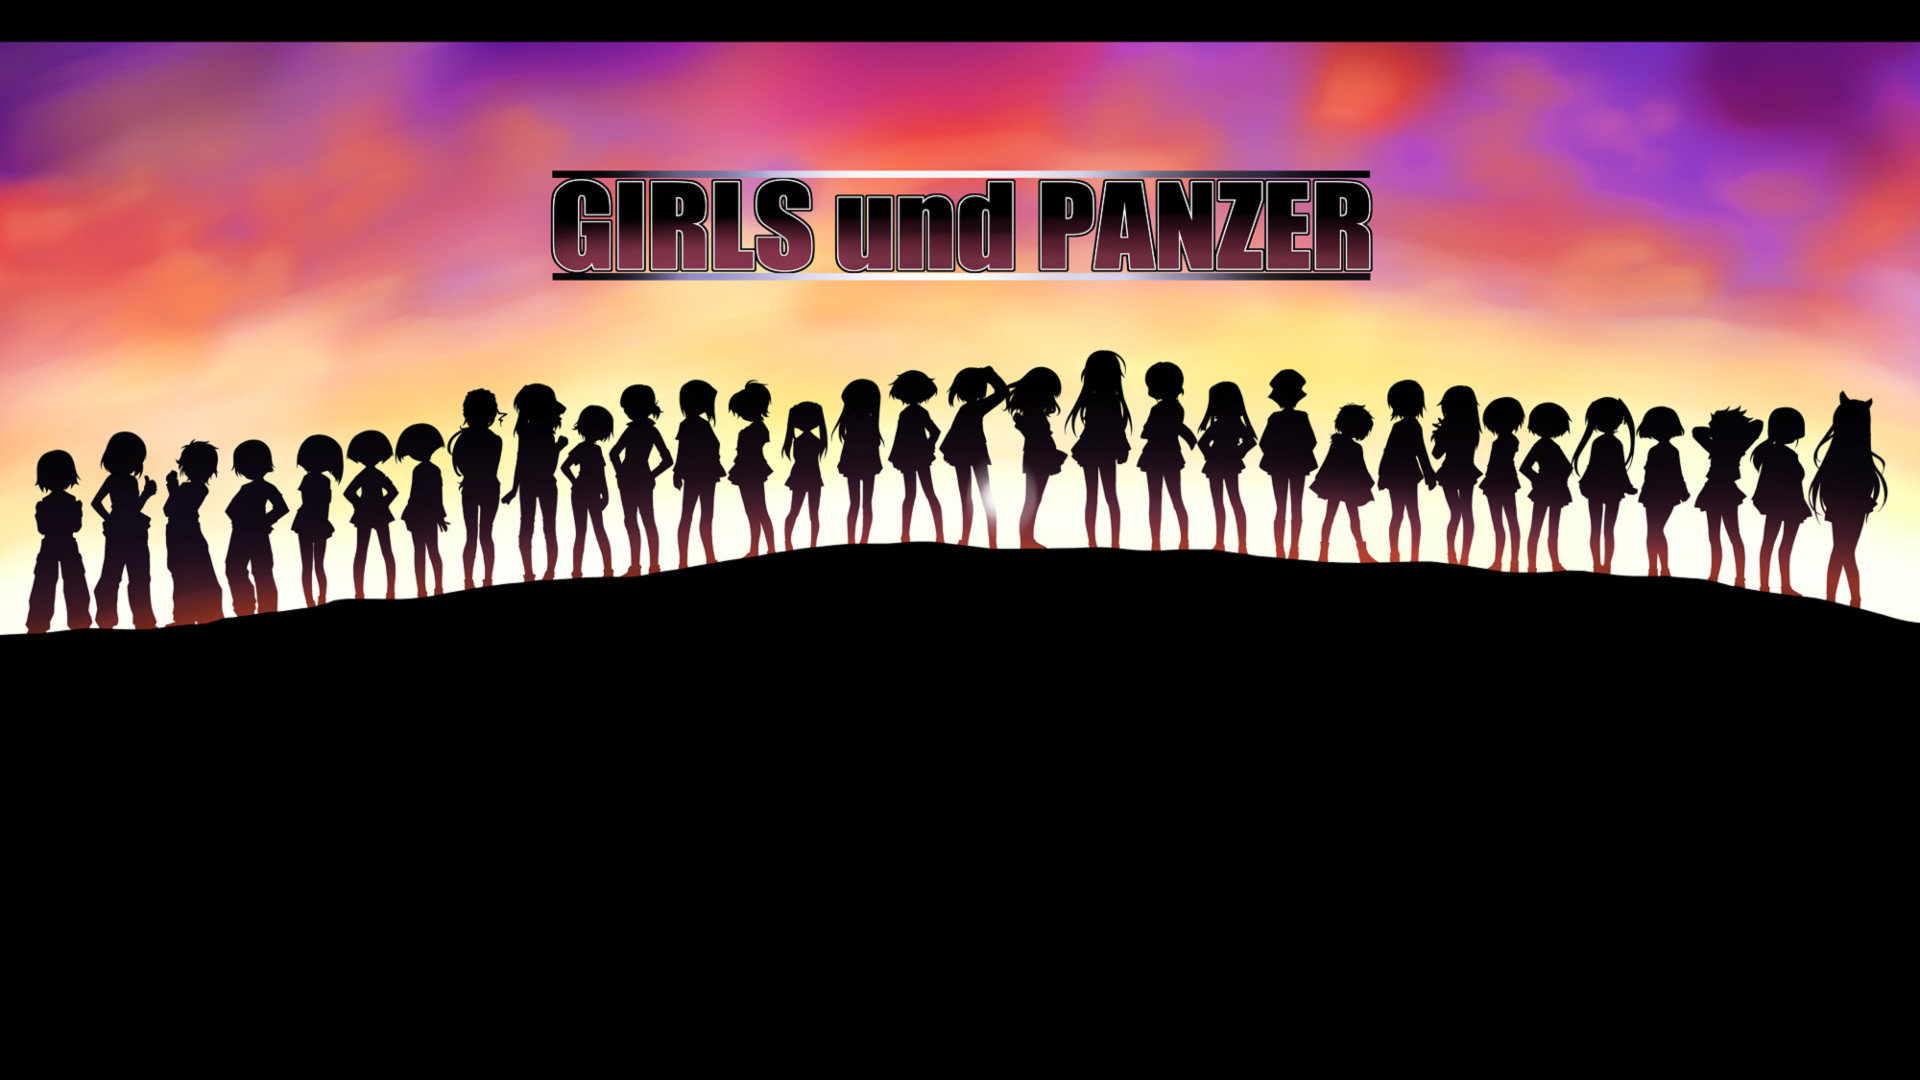 Download hd 1920x1080 Girls Und Panzer desktop background ID:208209 for free